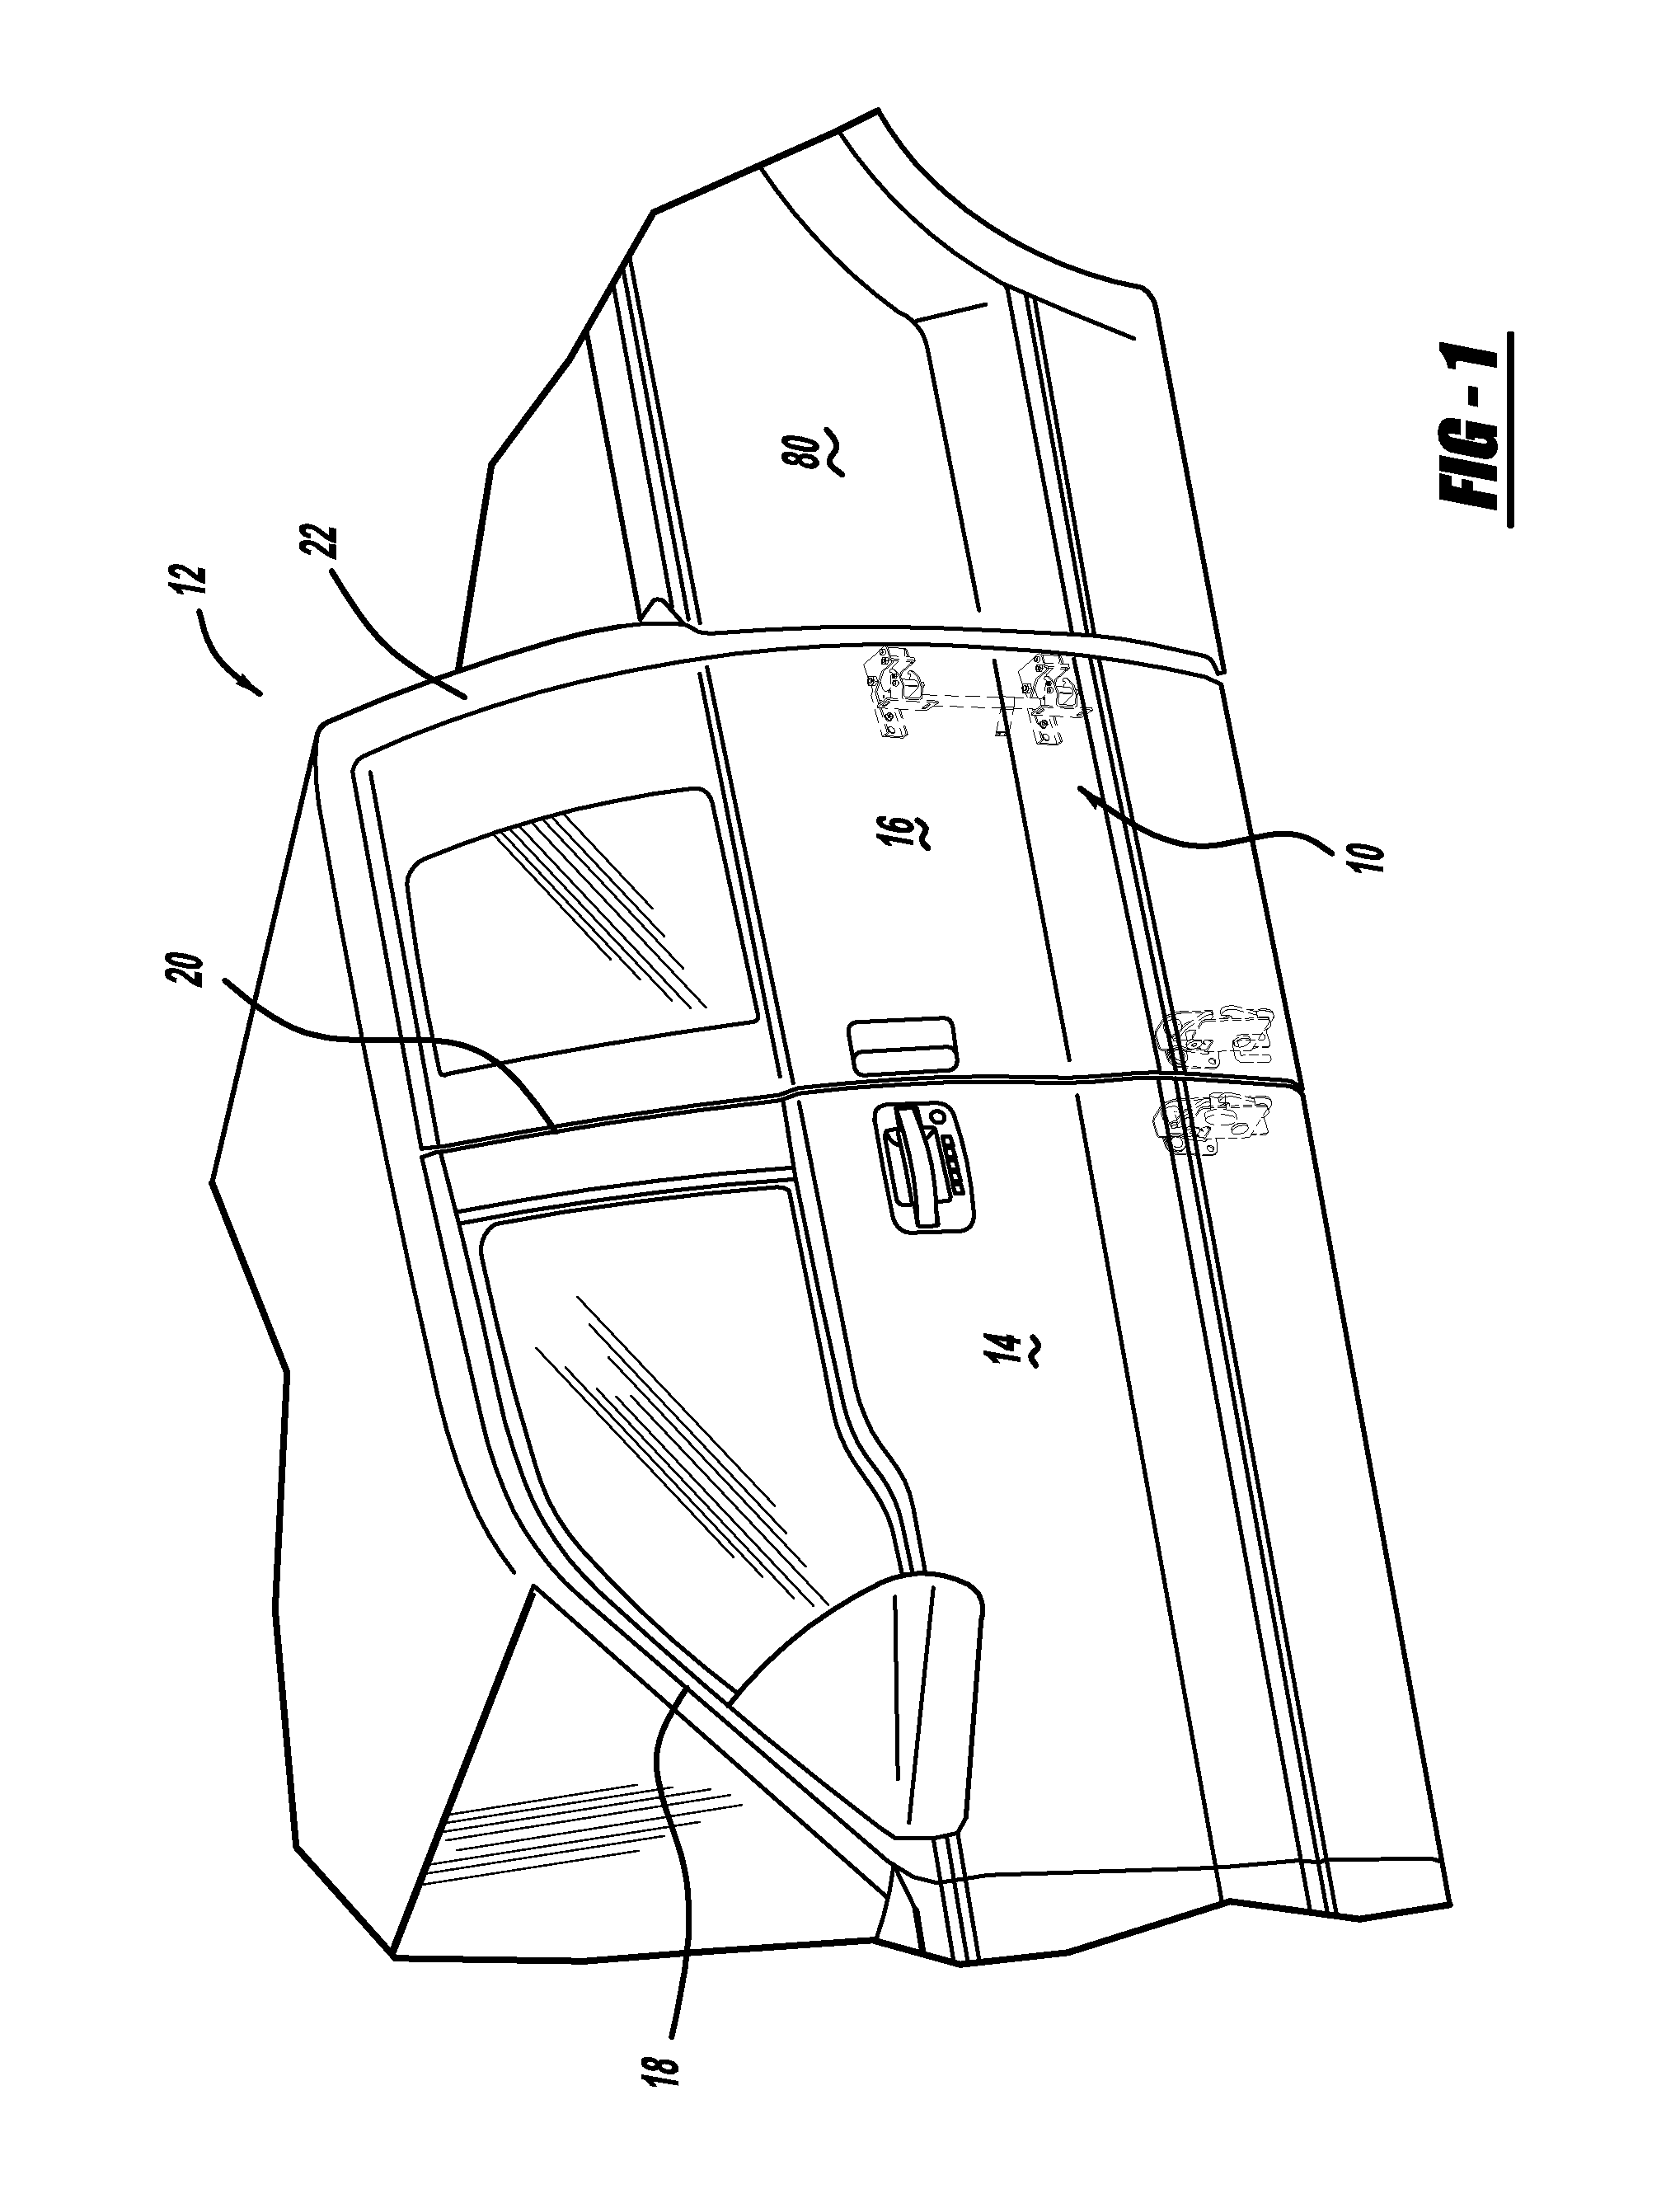 Vehicle 180 degree rear door articulating mechanism